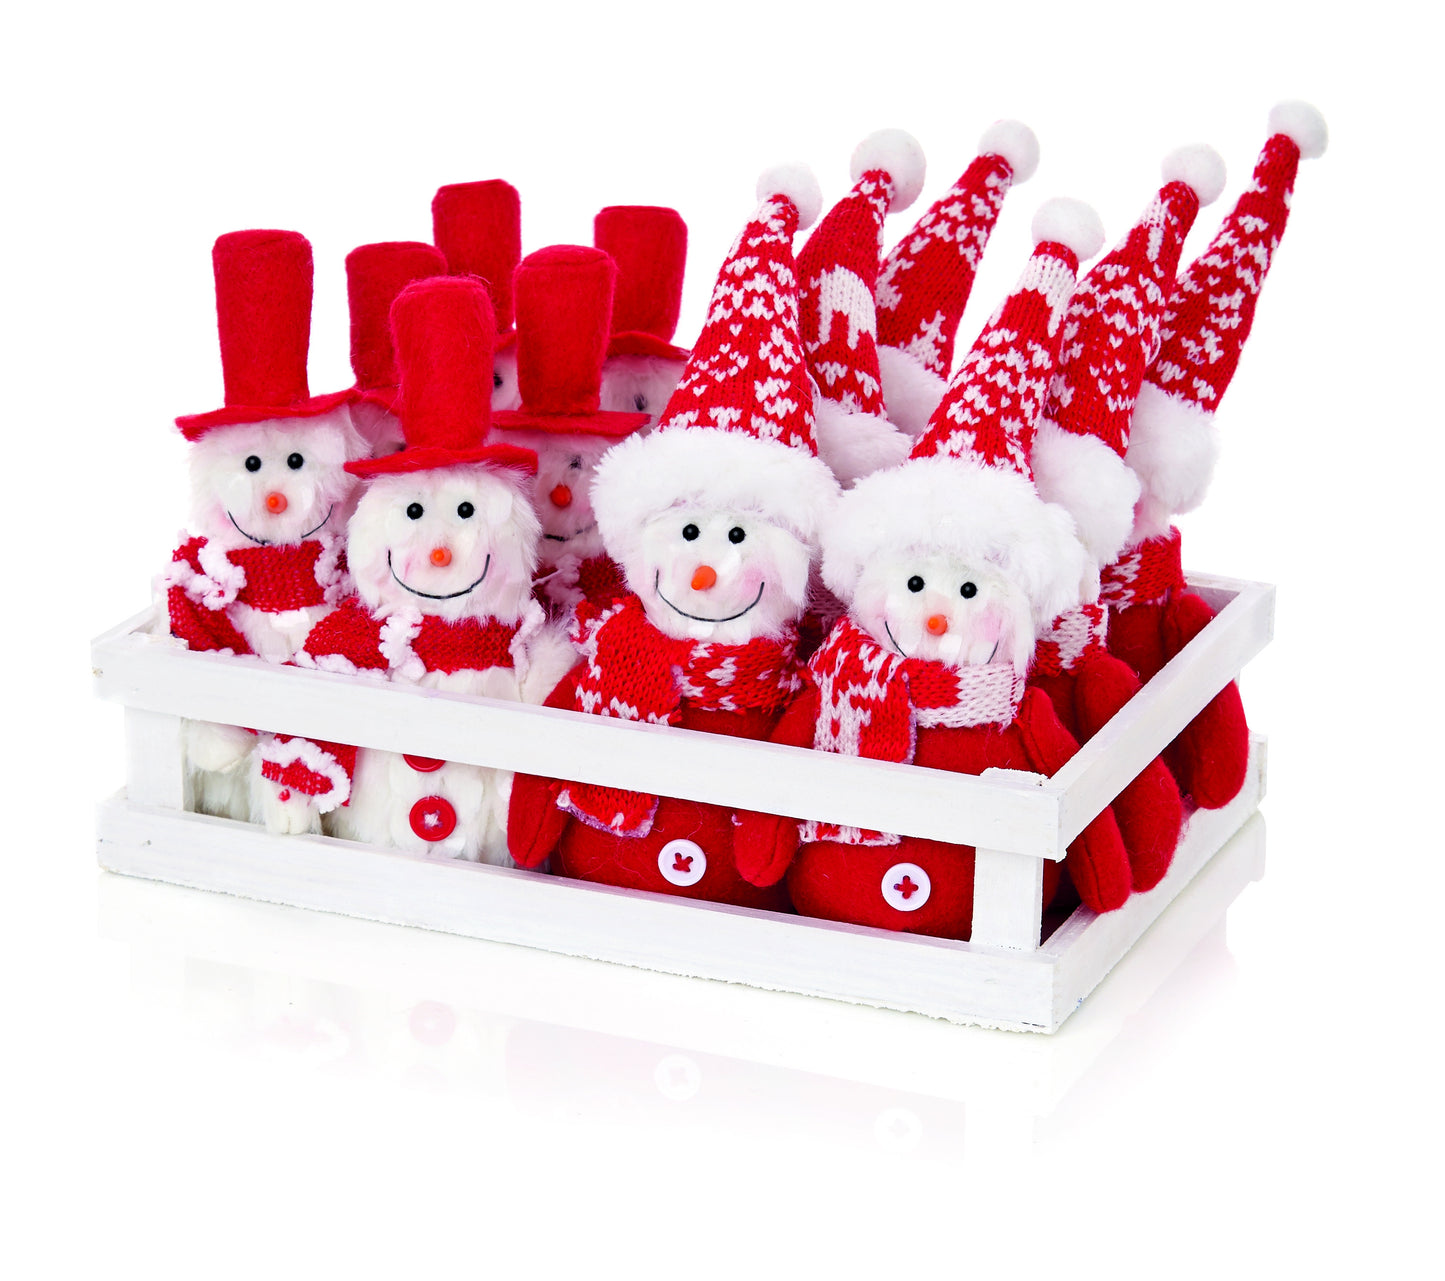 Premier Assorted Snowman Christmas Decoration